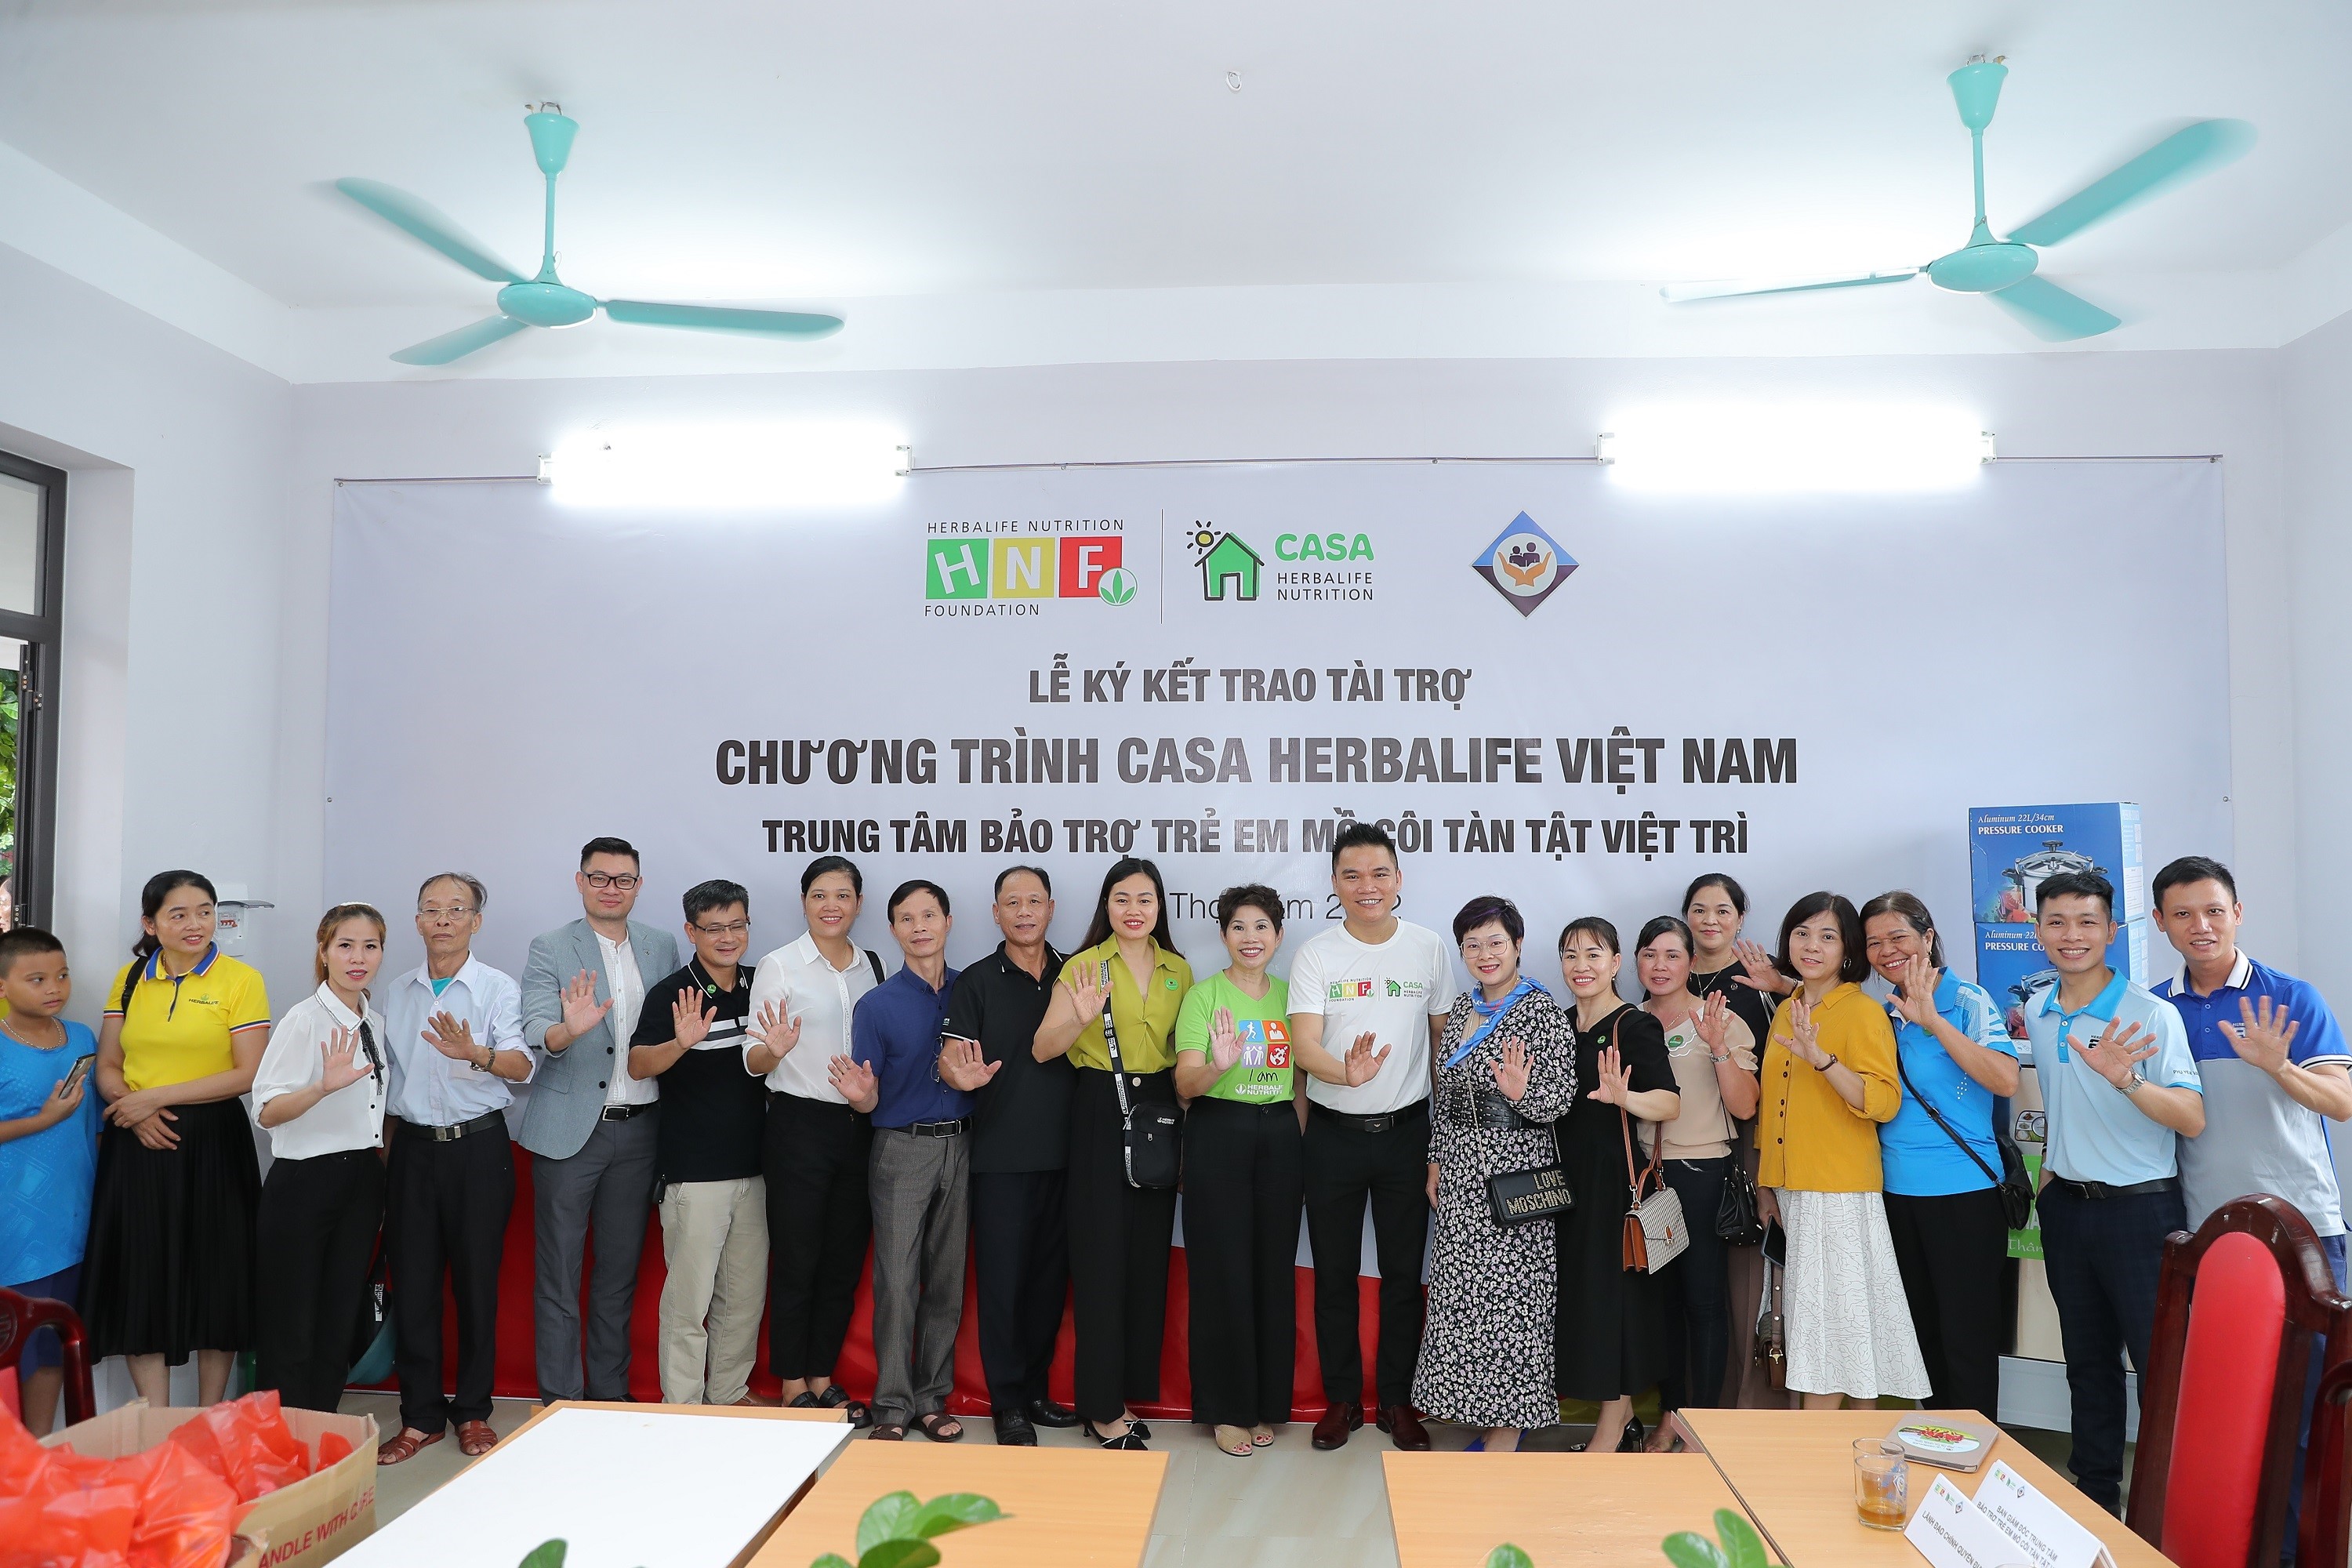 Herbalife Việt Nam hỗ trợ dinh dưỡng lành mạnh cho trẻ em có hoàn cảnh khó khăn tại Trung tâm Bảo trợ Trẻ em mồ côi tàn tật Việt Trì - 3